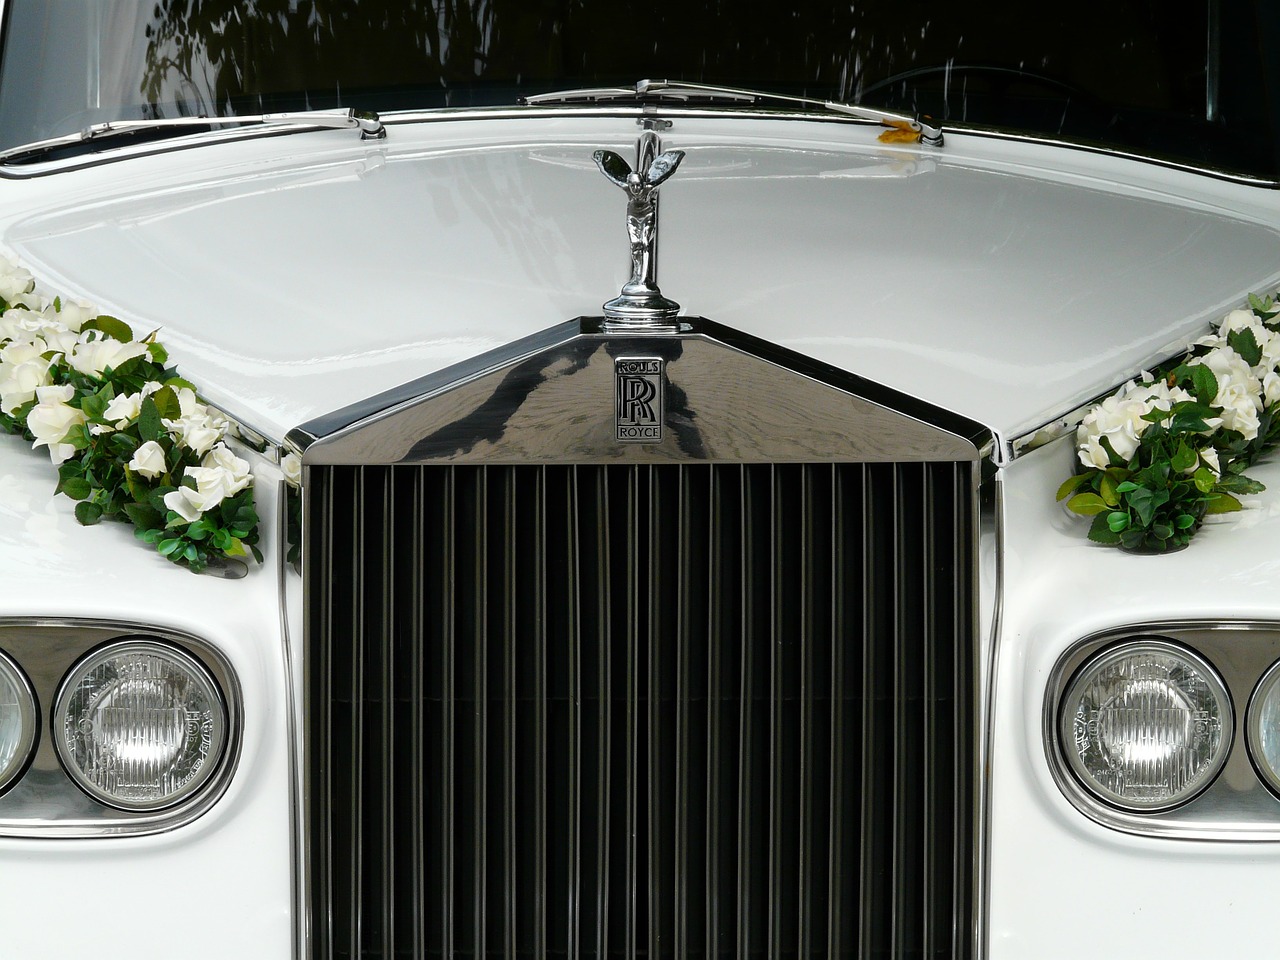 https://casaterna.com/wp-content/uploads/2019/07/wedding-car.jpg